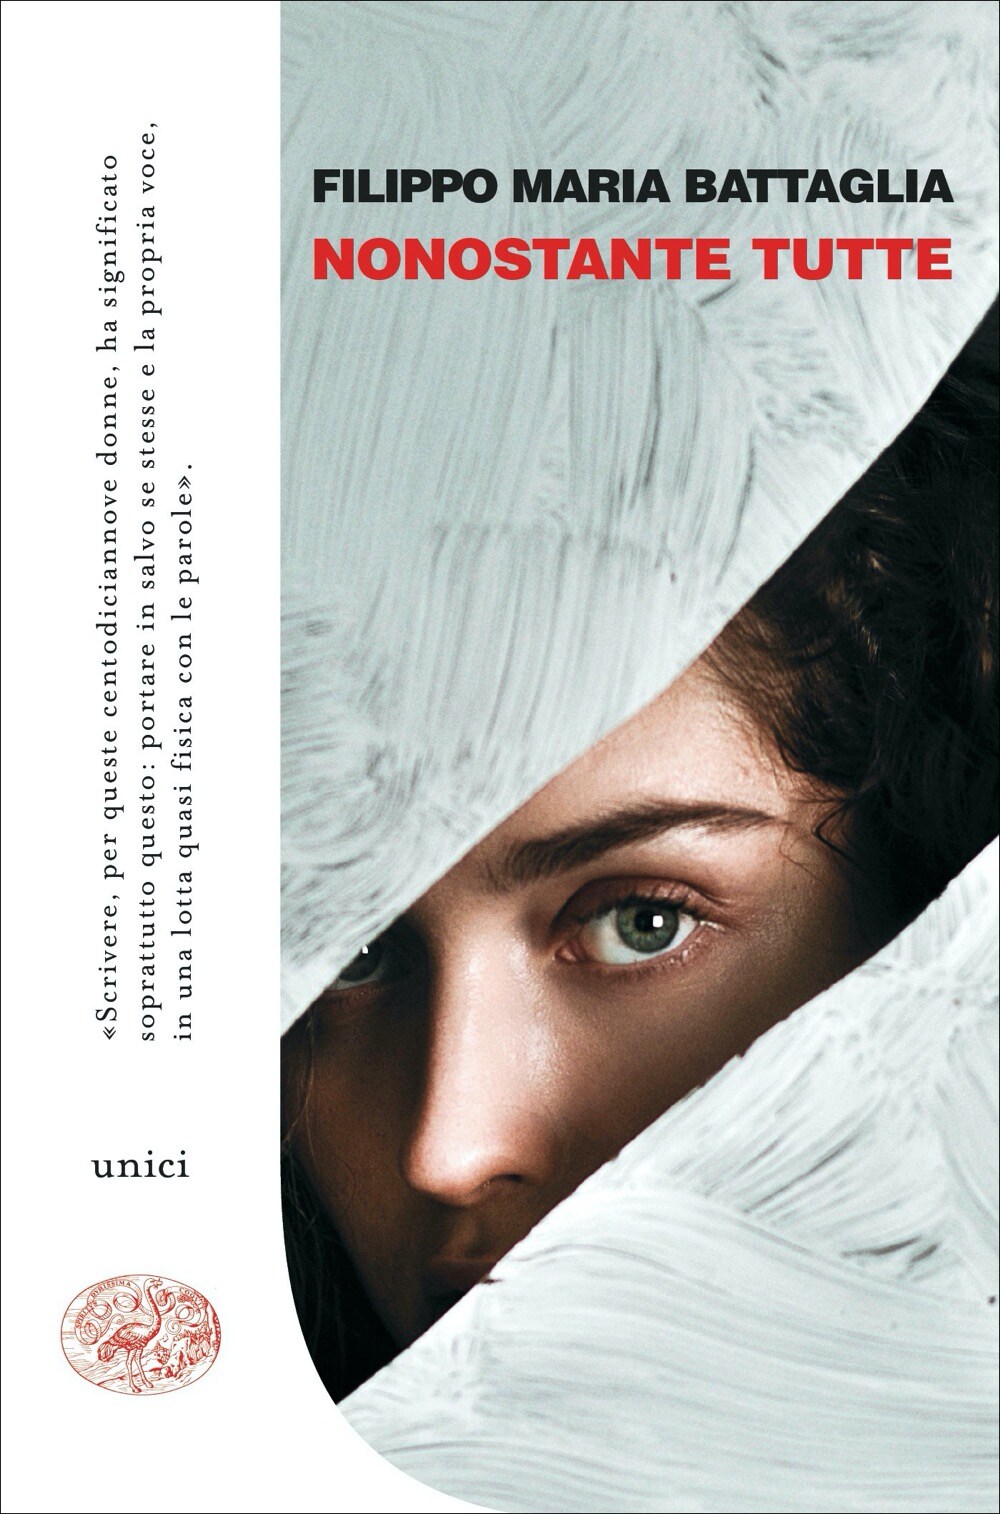 La copertina del libro "Nonostante tutte" di Filippo Maria Battaglia (Einaudi)